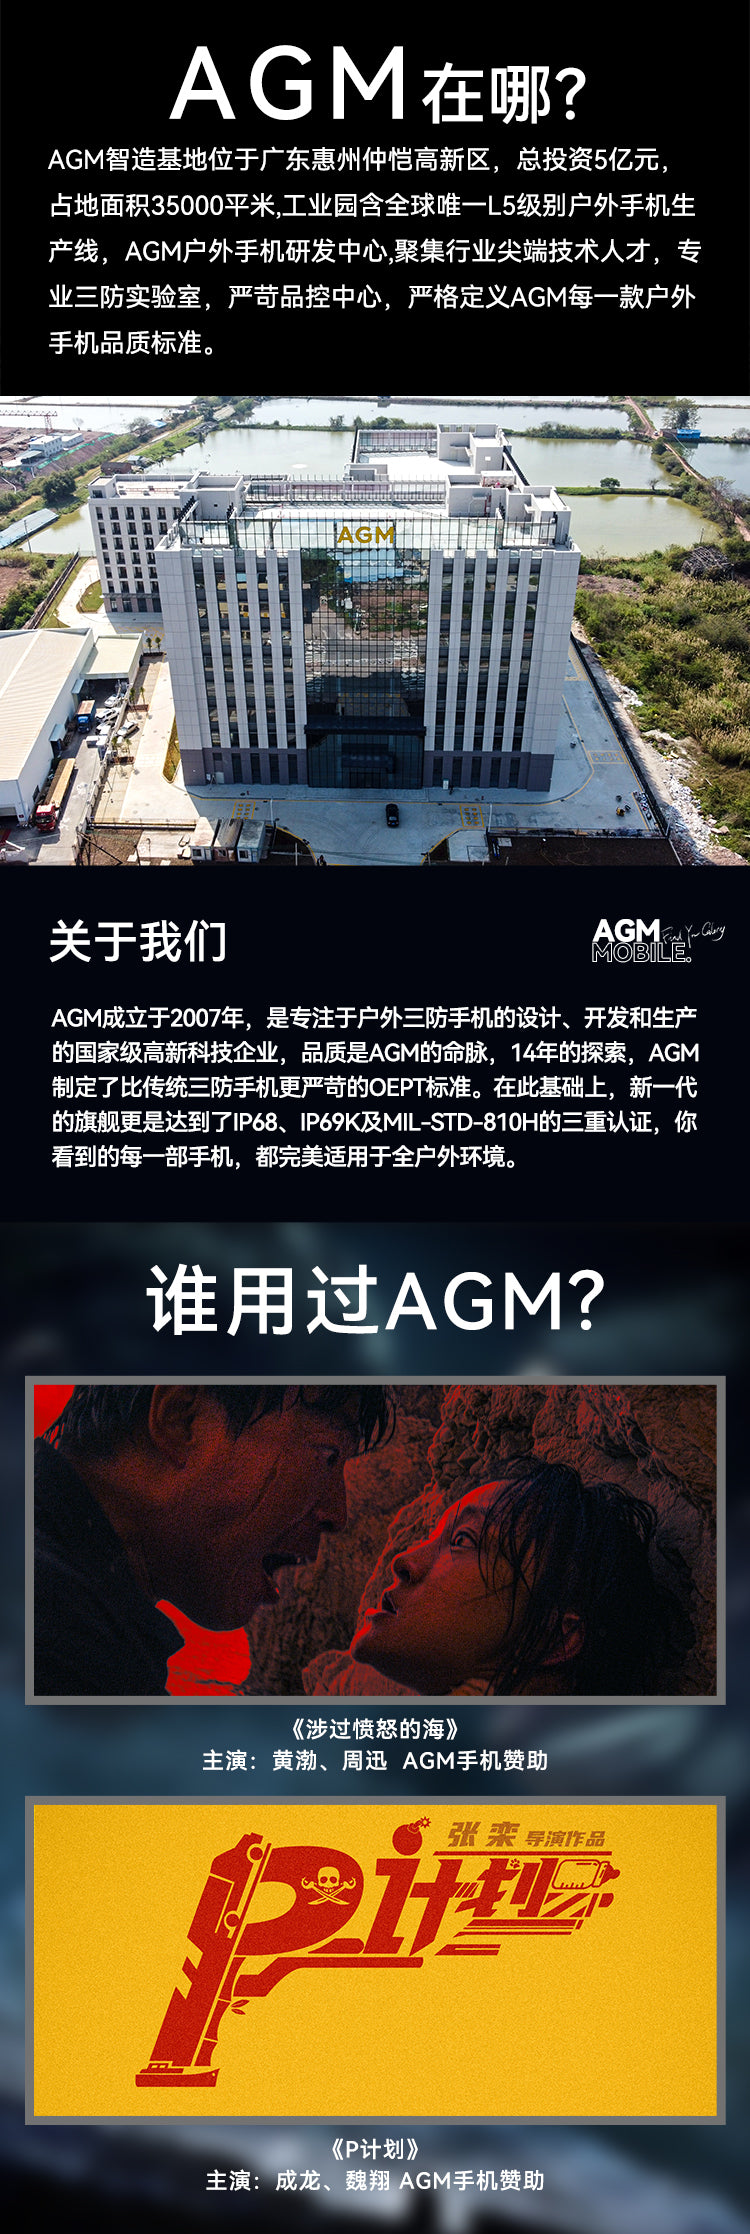 果然不是折叠屏！AGM三防翻盖手机M8 Flip正式发布-腾讯新闻